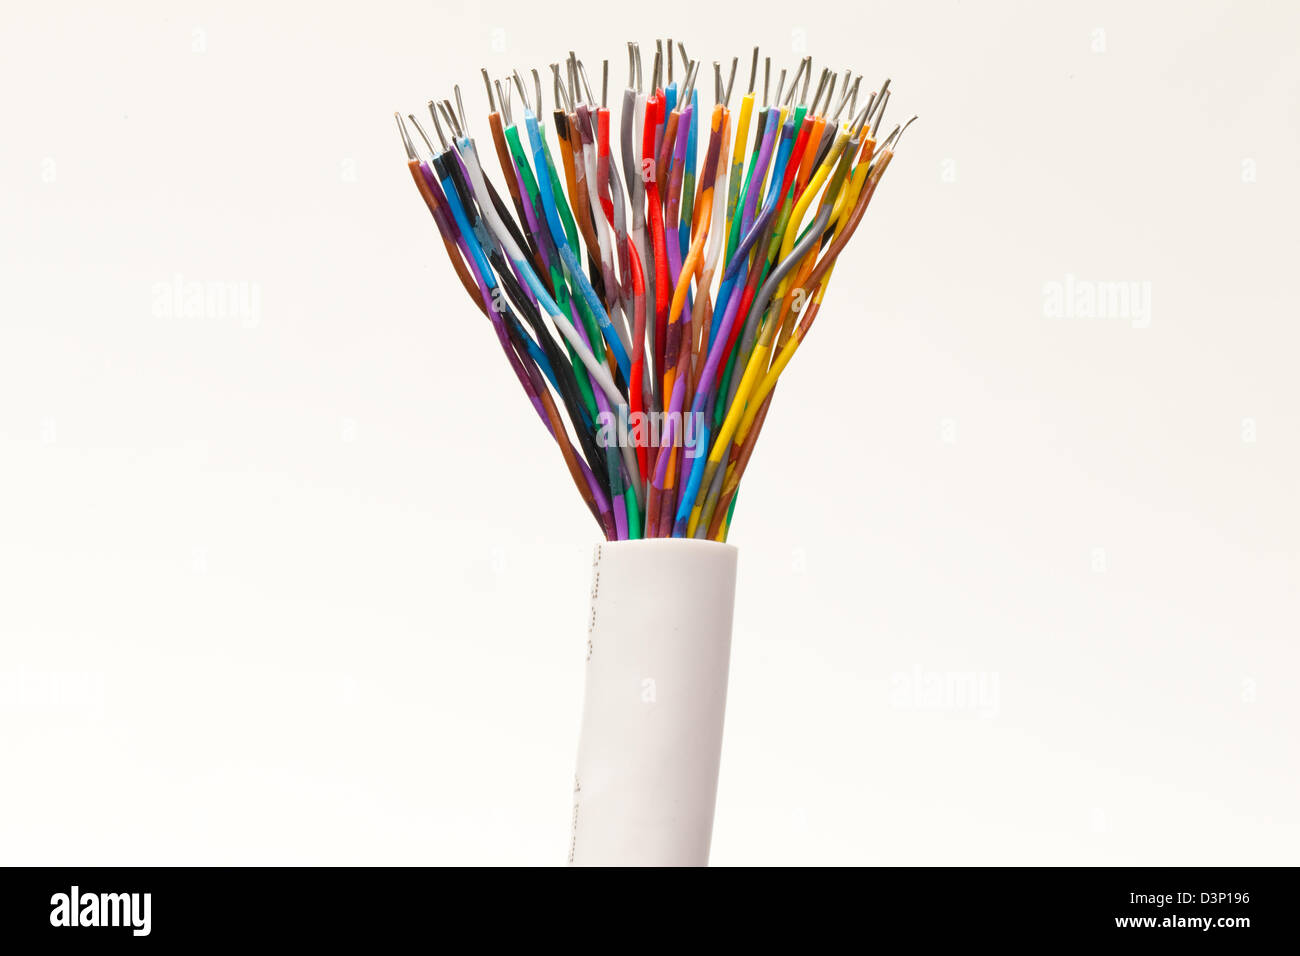 Diversidad de color Cables-Multi mezcla de colores del arco iris Foto de stock